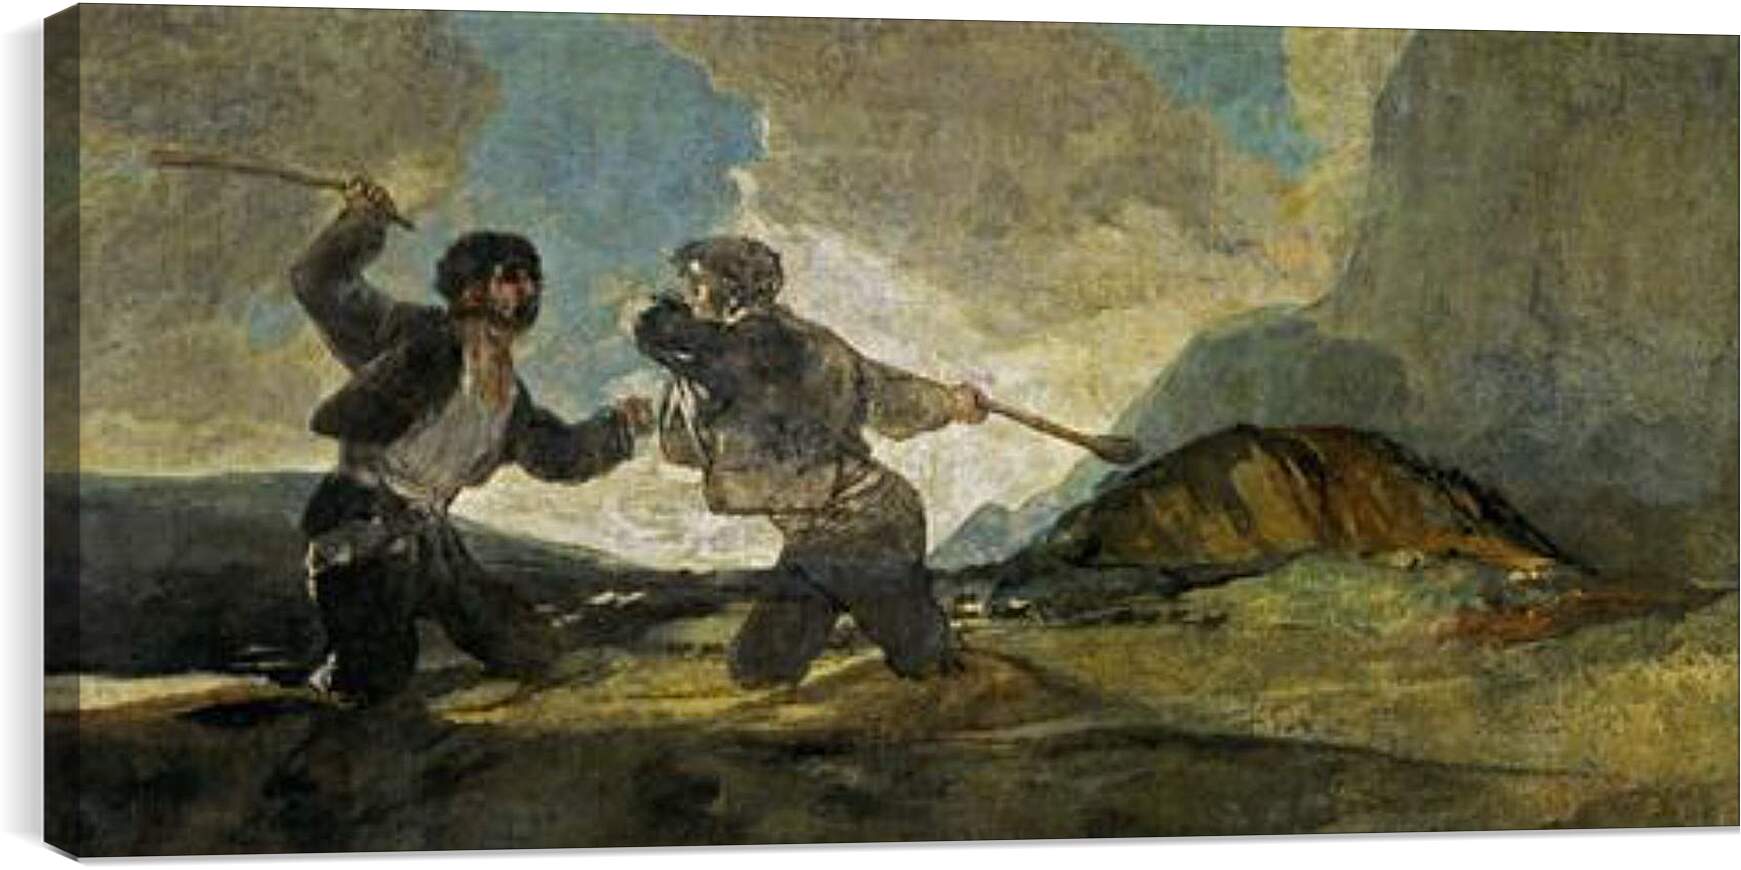 Постер и плакат - Duel with Cudgels. Франсиско Гойя